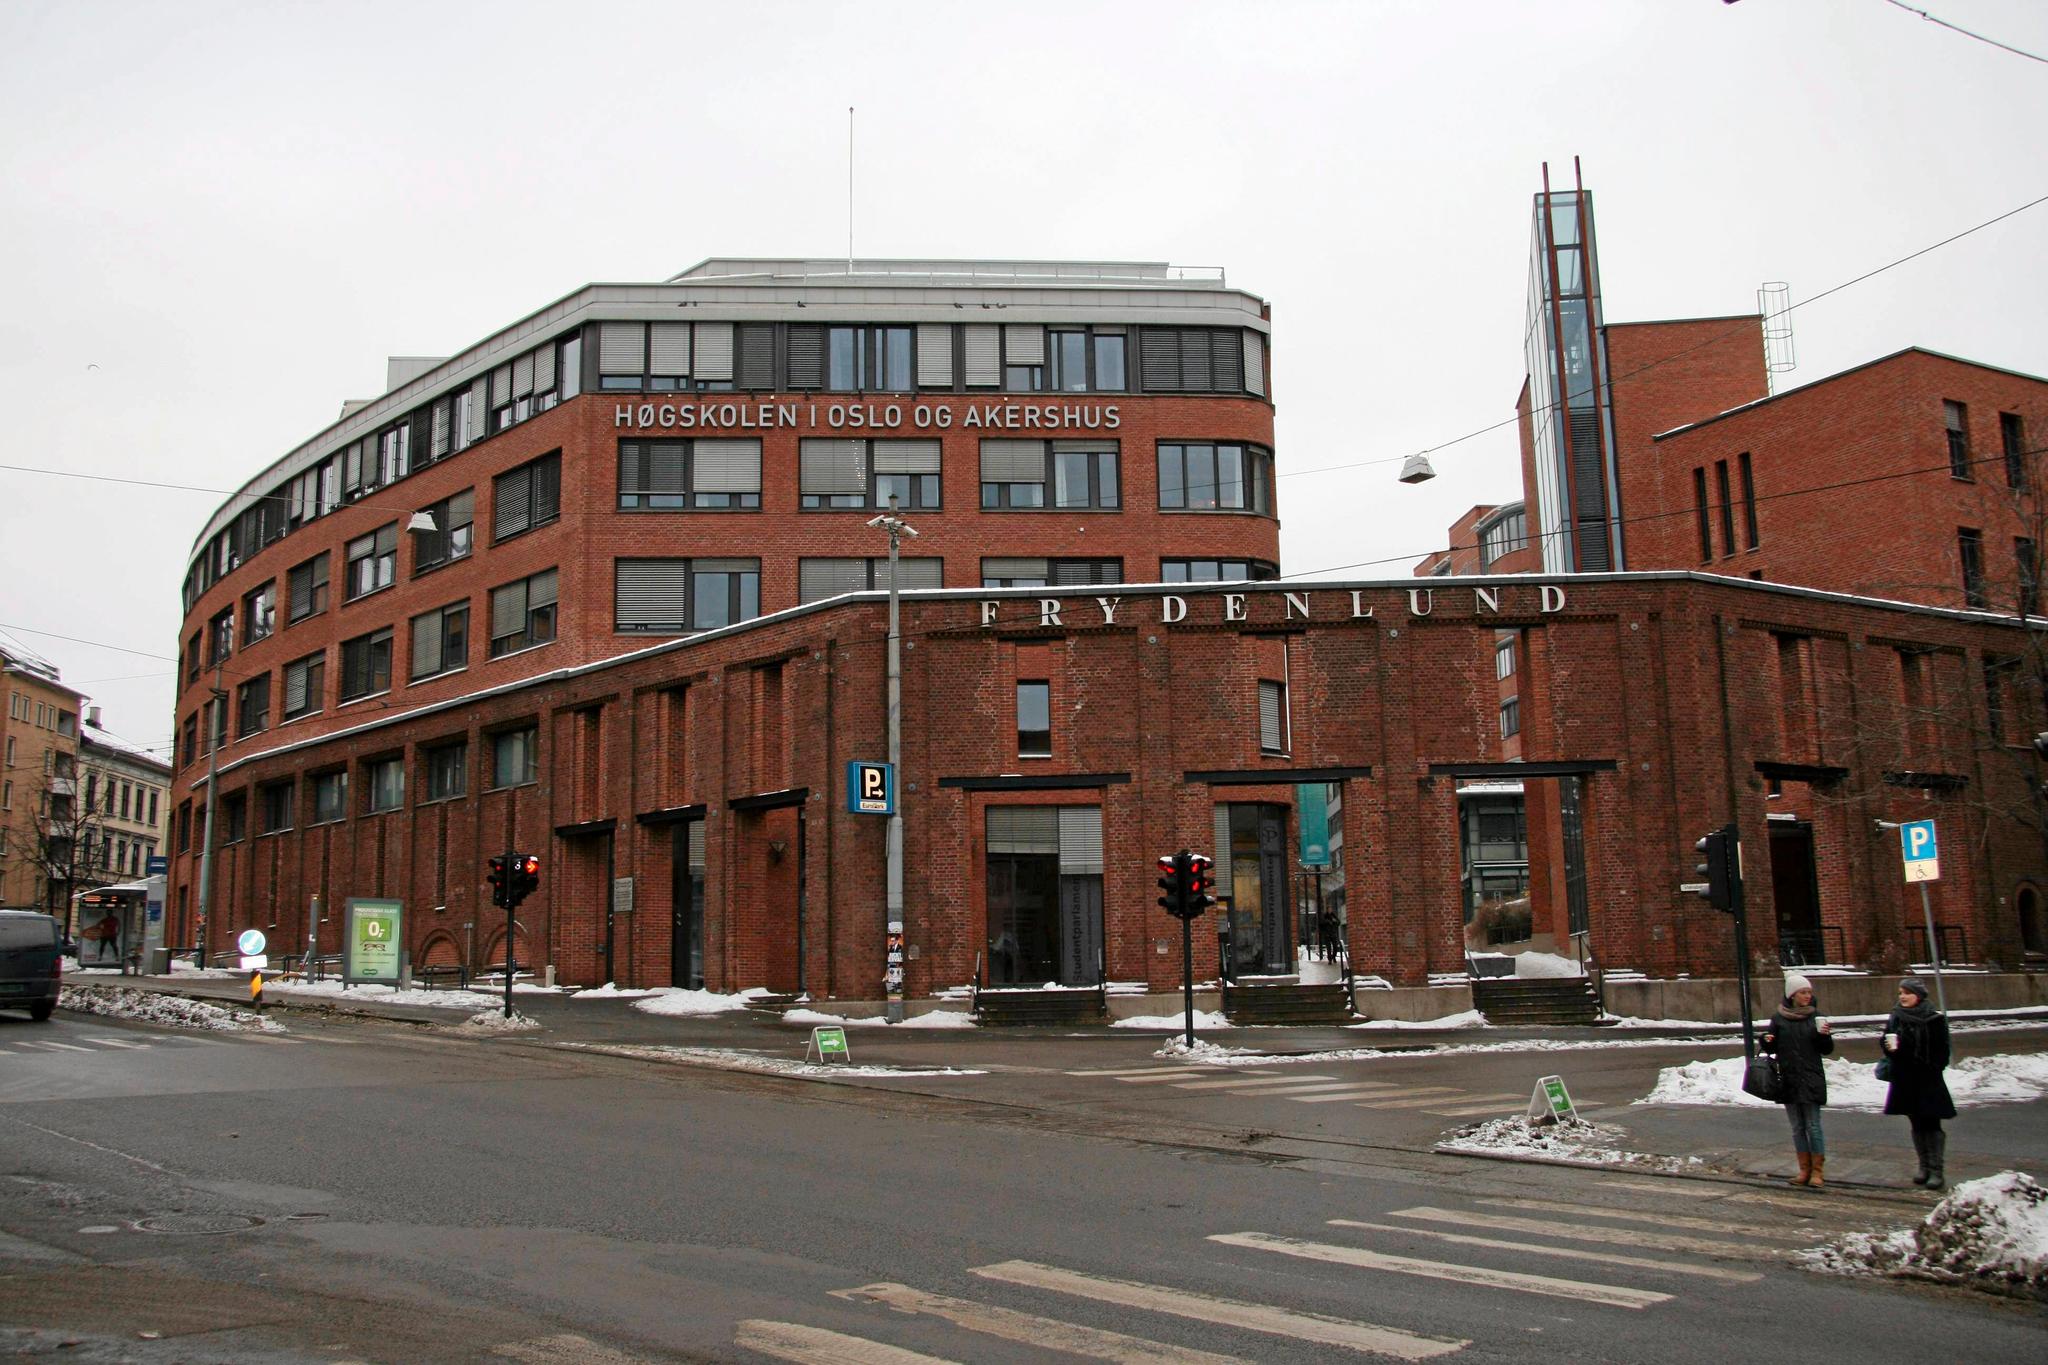  Høgskolen i Oslo og Akershus er et viktig steg videre på veien for å bli universitet. Foto: Audun Braastad / NTB scanpix 